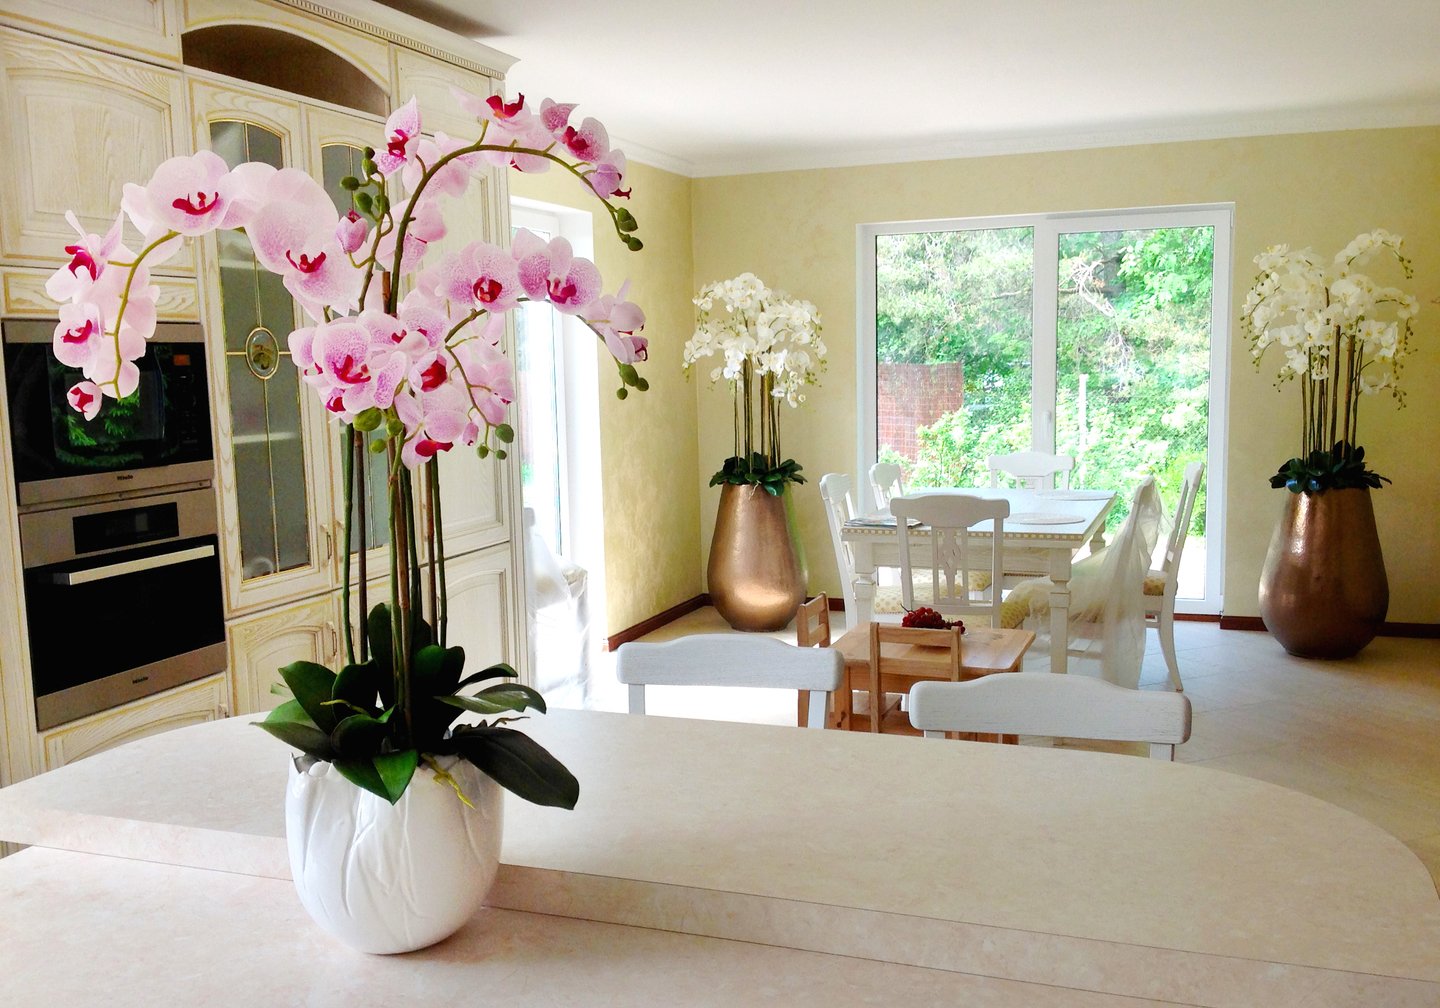 Купить комнат цветы. Орхидеи в интерьере. Цветы в интерьере. Цветы в интерьере квартиры. Интерьер с искусственными цветами.